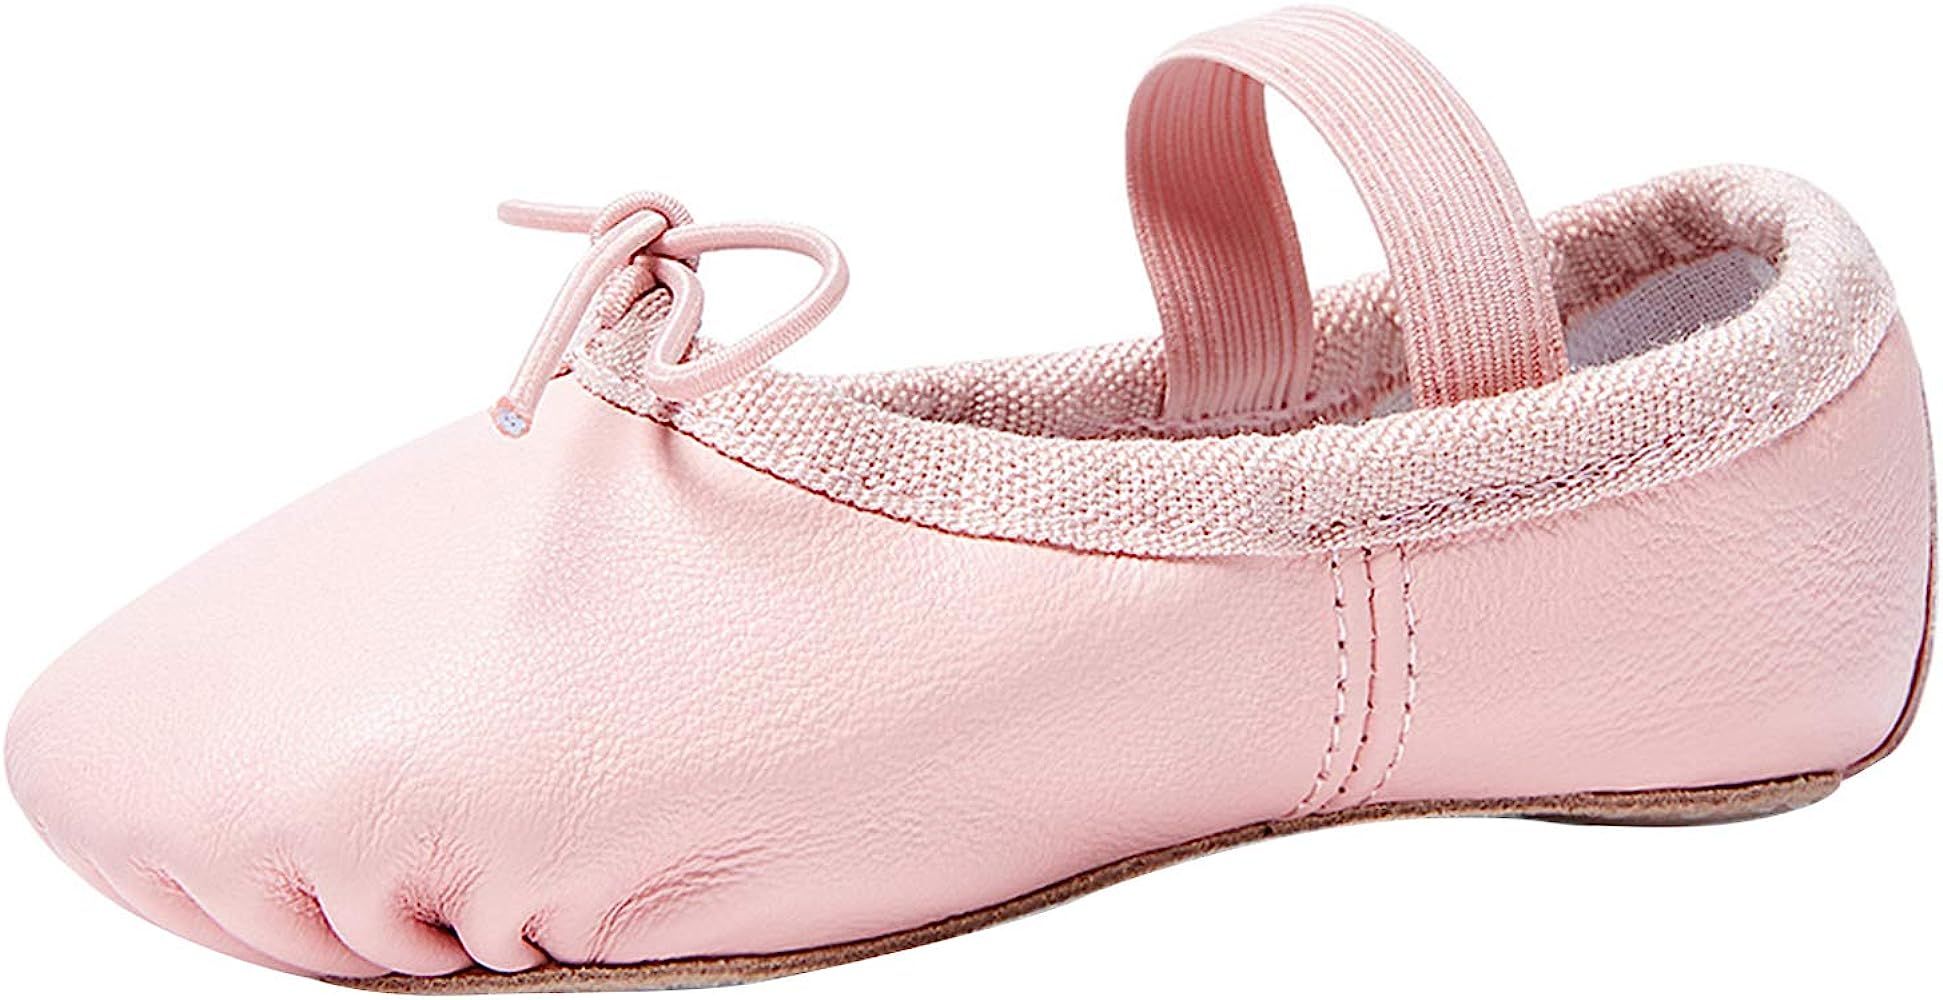 Stelle Ballet Shoes for Girls Toddler Genuine Leather Ballet Dance Slippers for Toddler/Little/Bi... | Amazon (US)